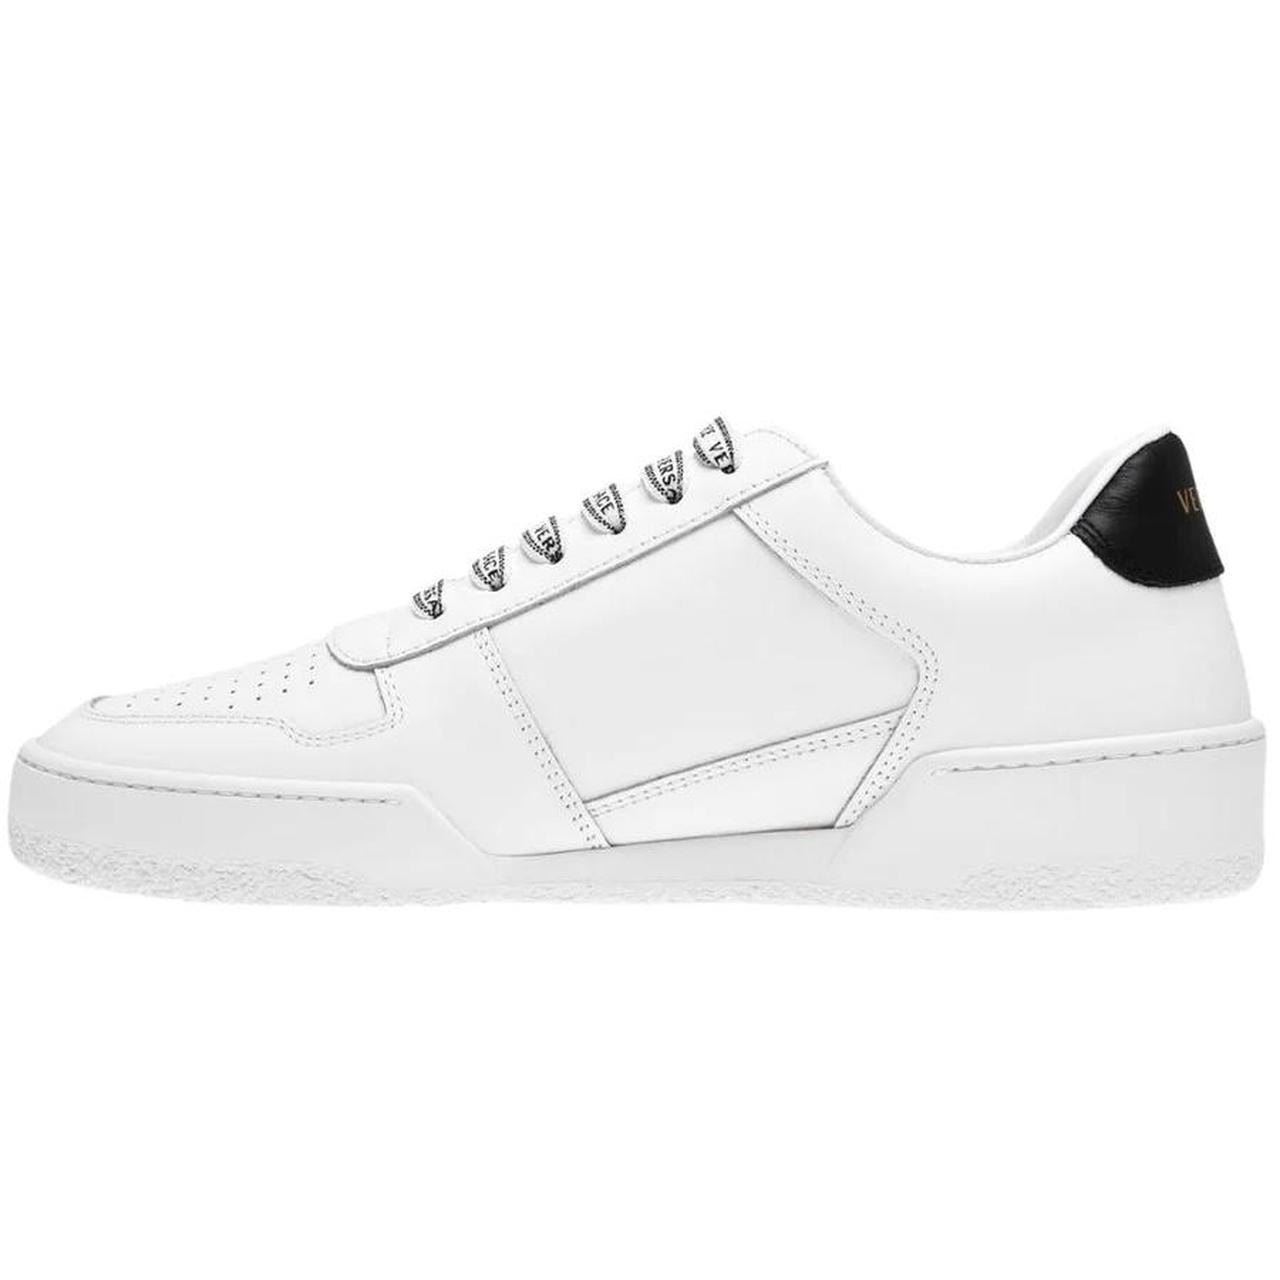 Versace Logo Black Heel White Sneakers. RRP... - Depop